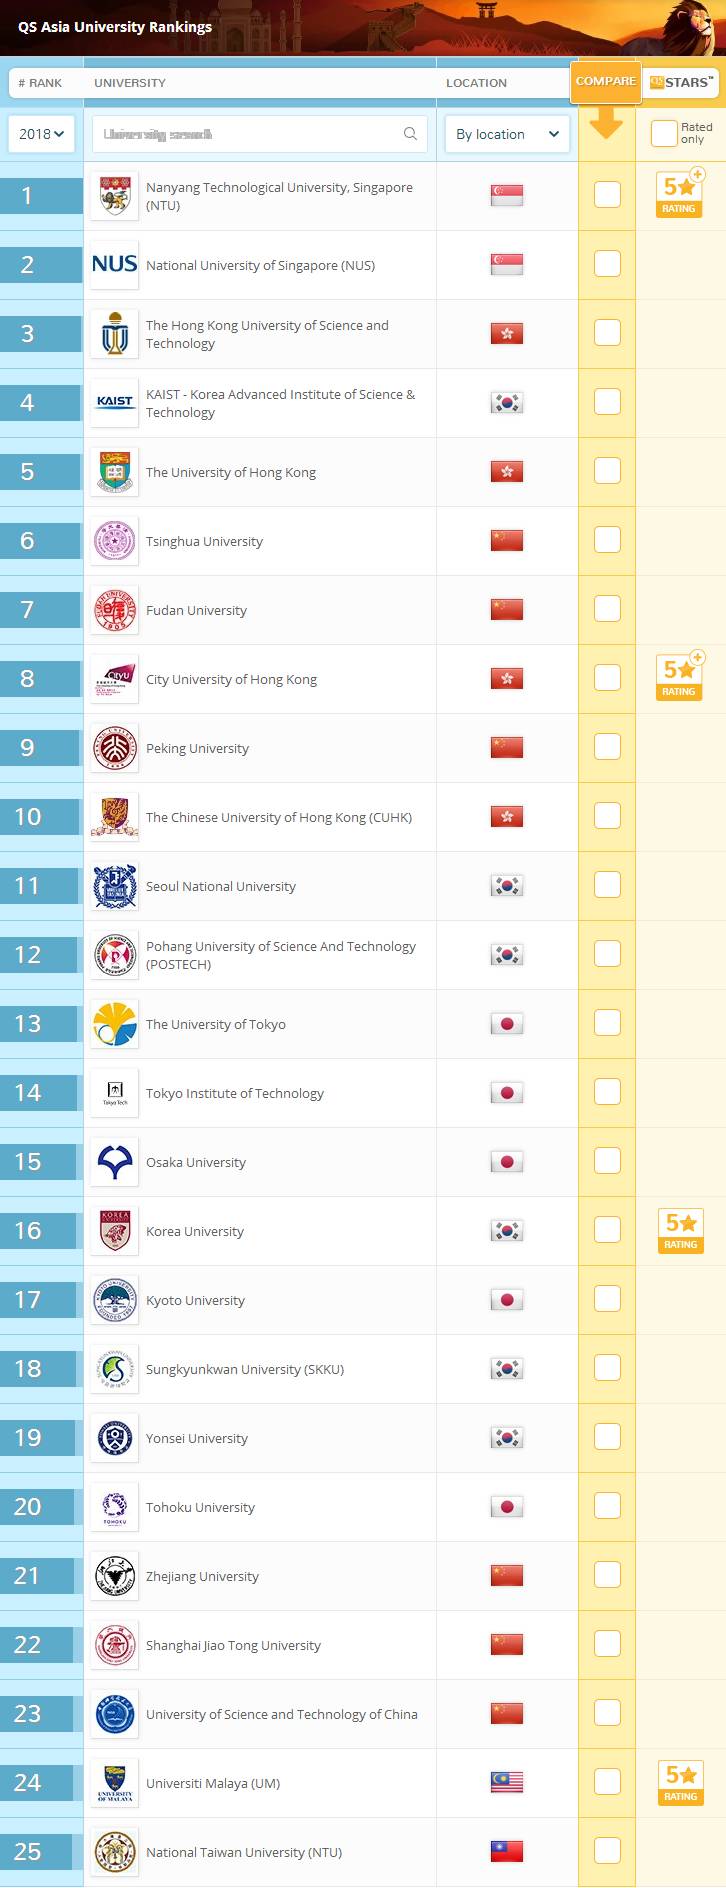 院校丨2018QS亚洲大学排名出炉,中国高校上榜